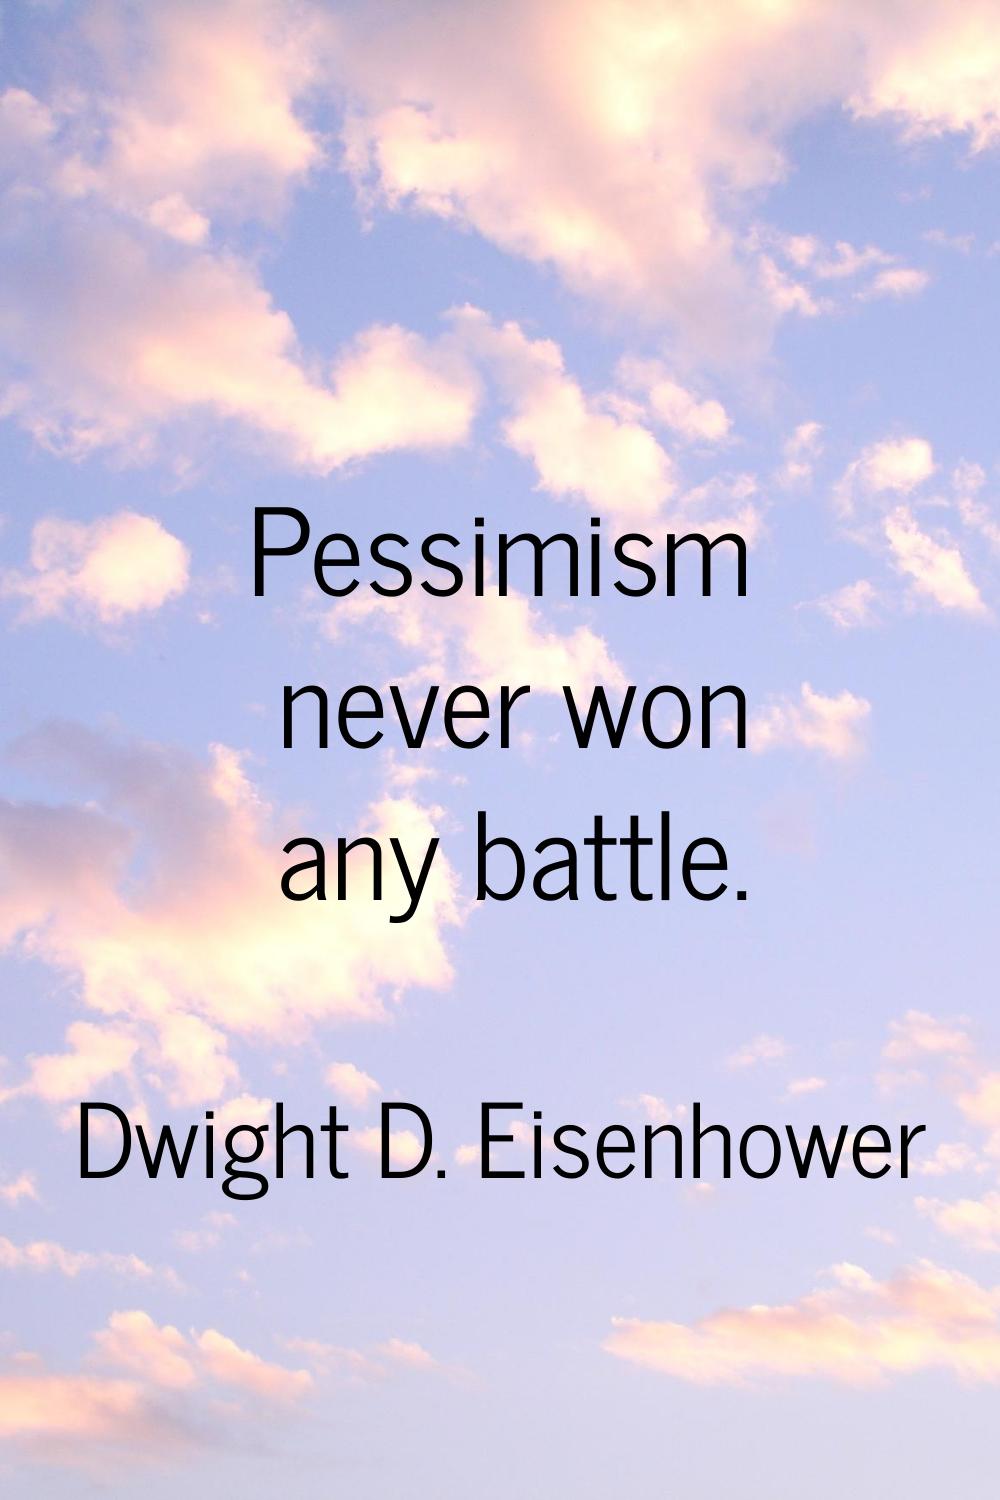 Pessimism never won any battle.